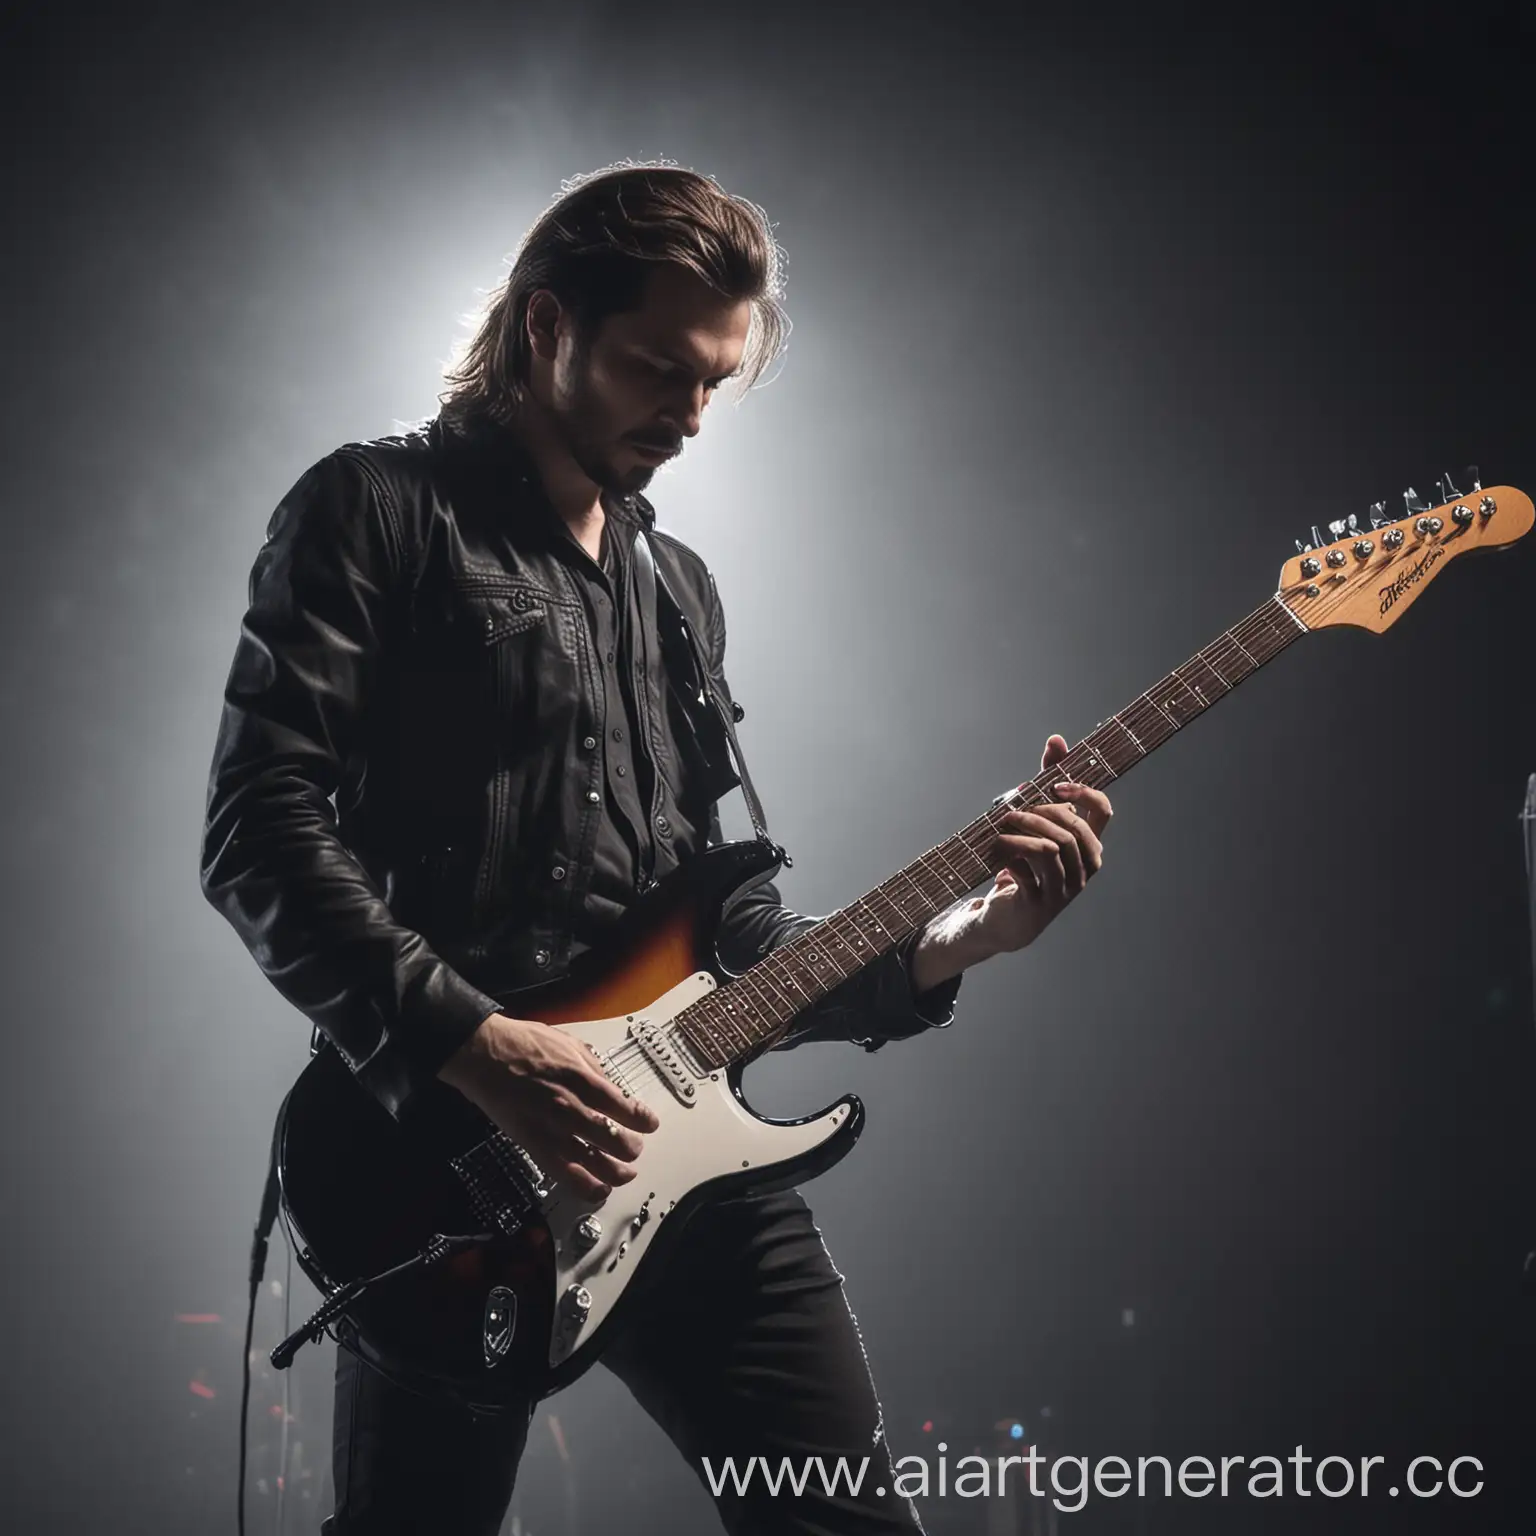 Electric-Guitarist-Performing-Live-Concert-under-Vibrant-LED-Lights